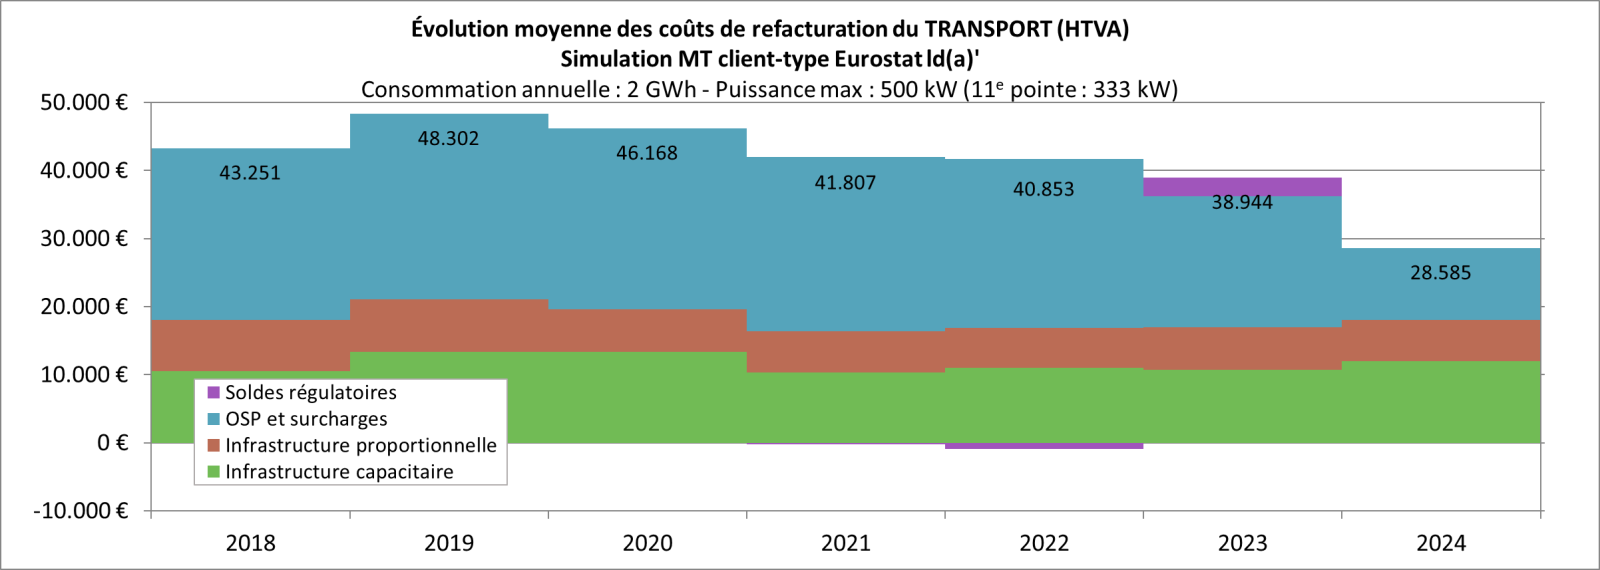 Évolution moyenne couts refacturation transport MT-2018 à 2024